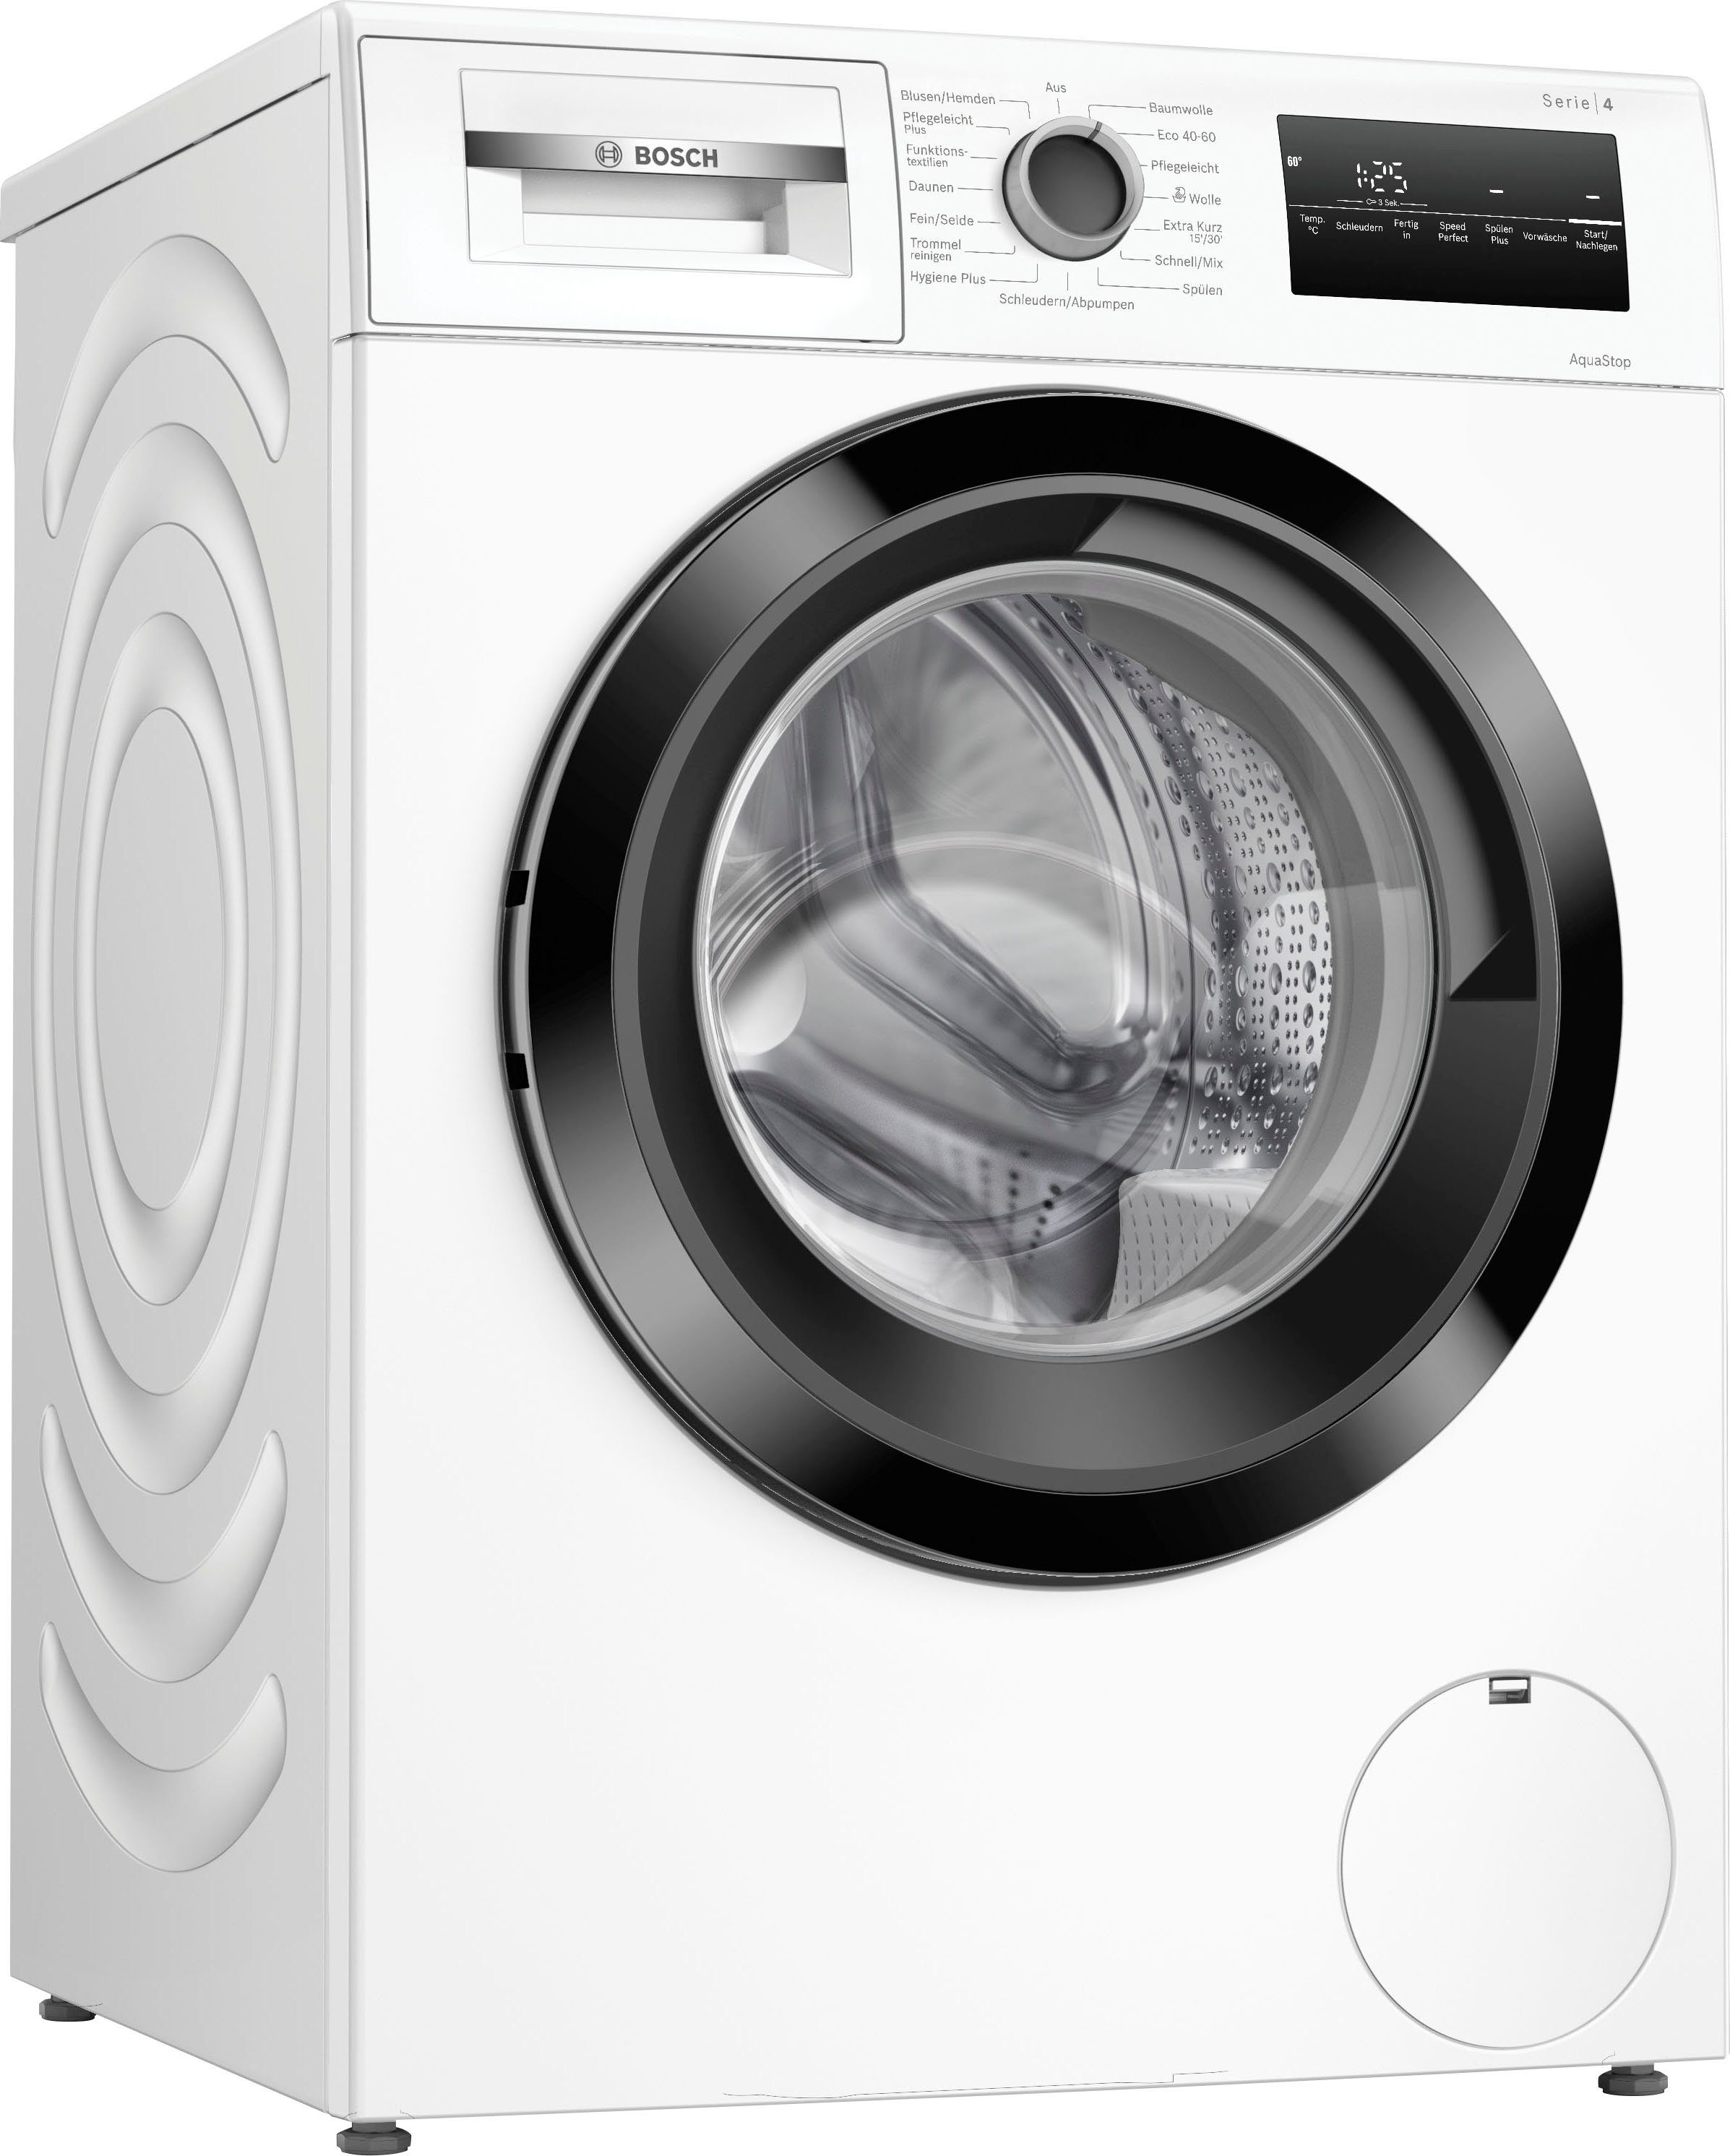 BOSCH Waschmaschine Serie 4 WAN28K43, 8 kg, 1400 U/min, Vario Trommel:  schonend und effizient Waschen dank einzigartiger Trommelstruktur